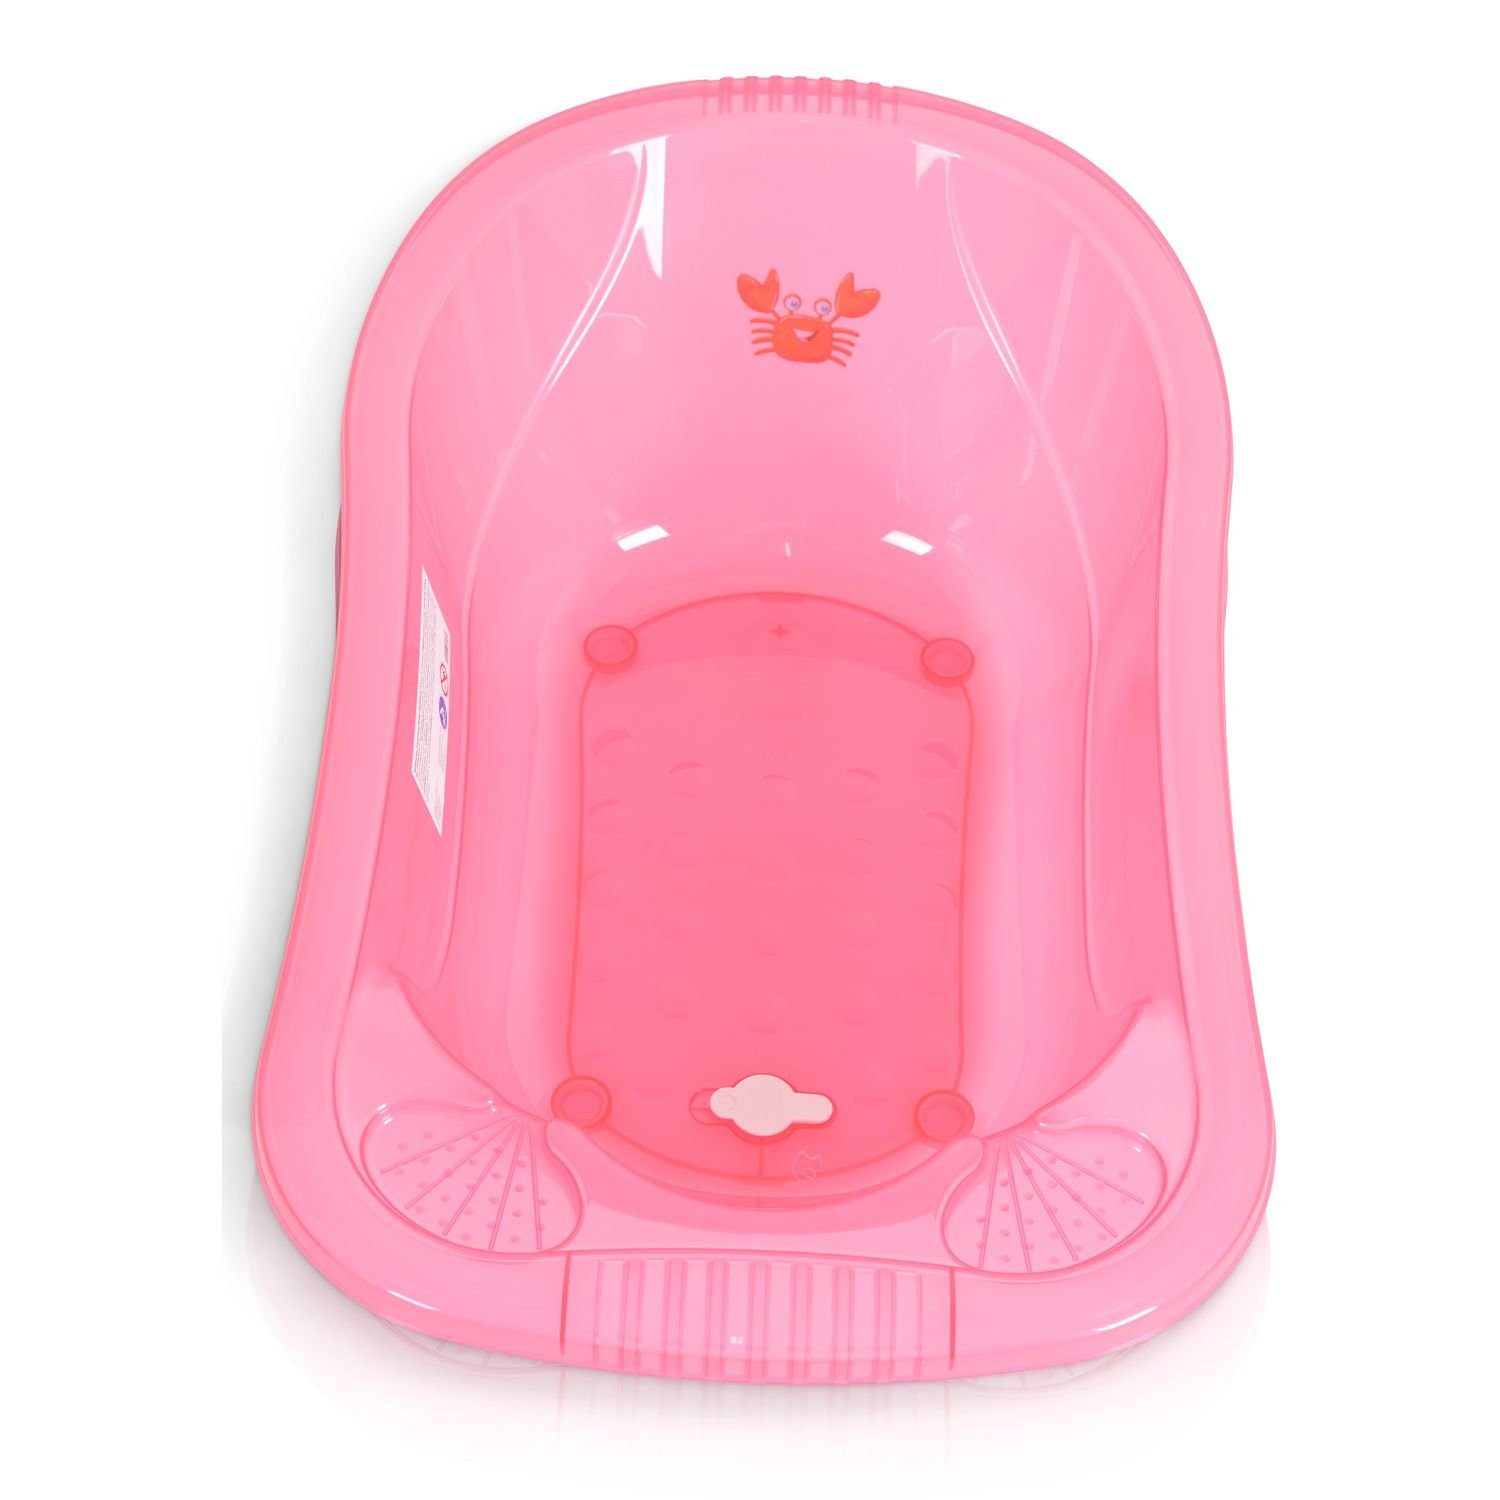 Omar Moni cm, Transparent Ablagefächer für Babybadewanne Babybadewanne Zubehör rosa Wasserablauf 90